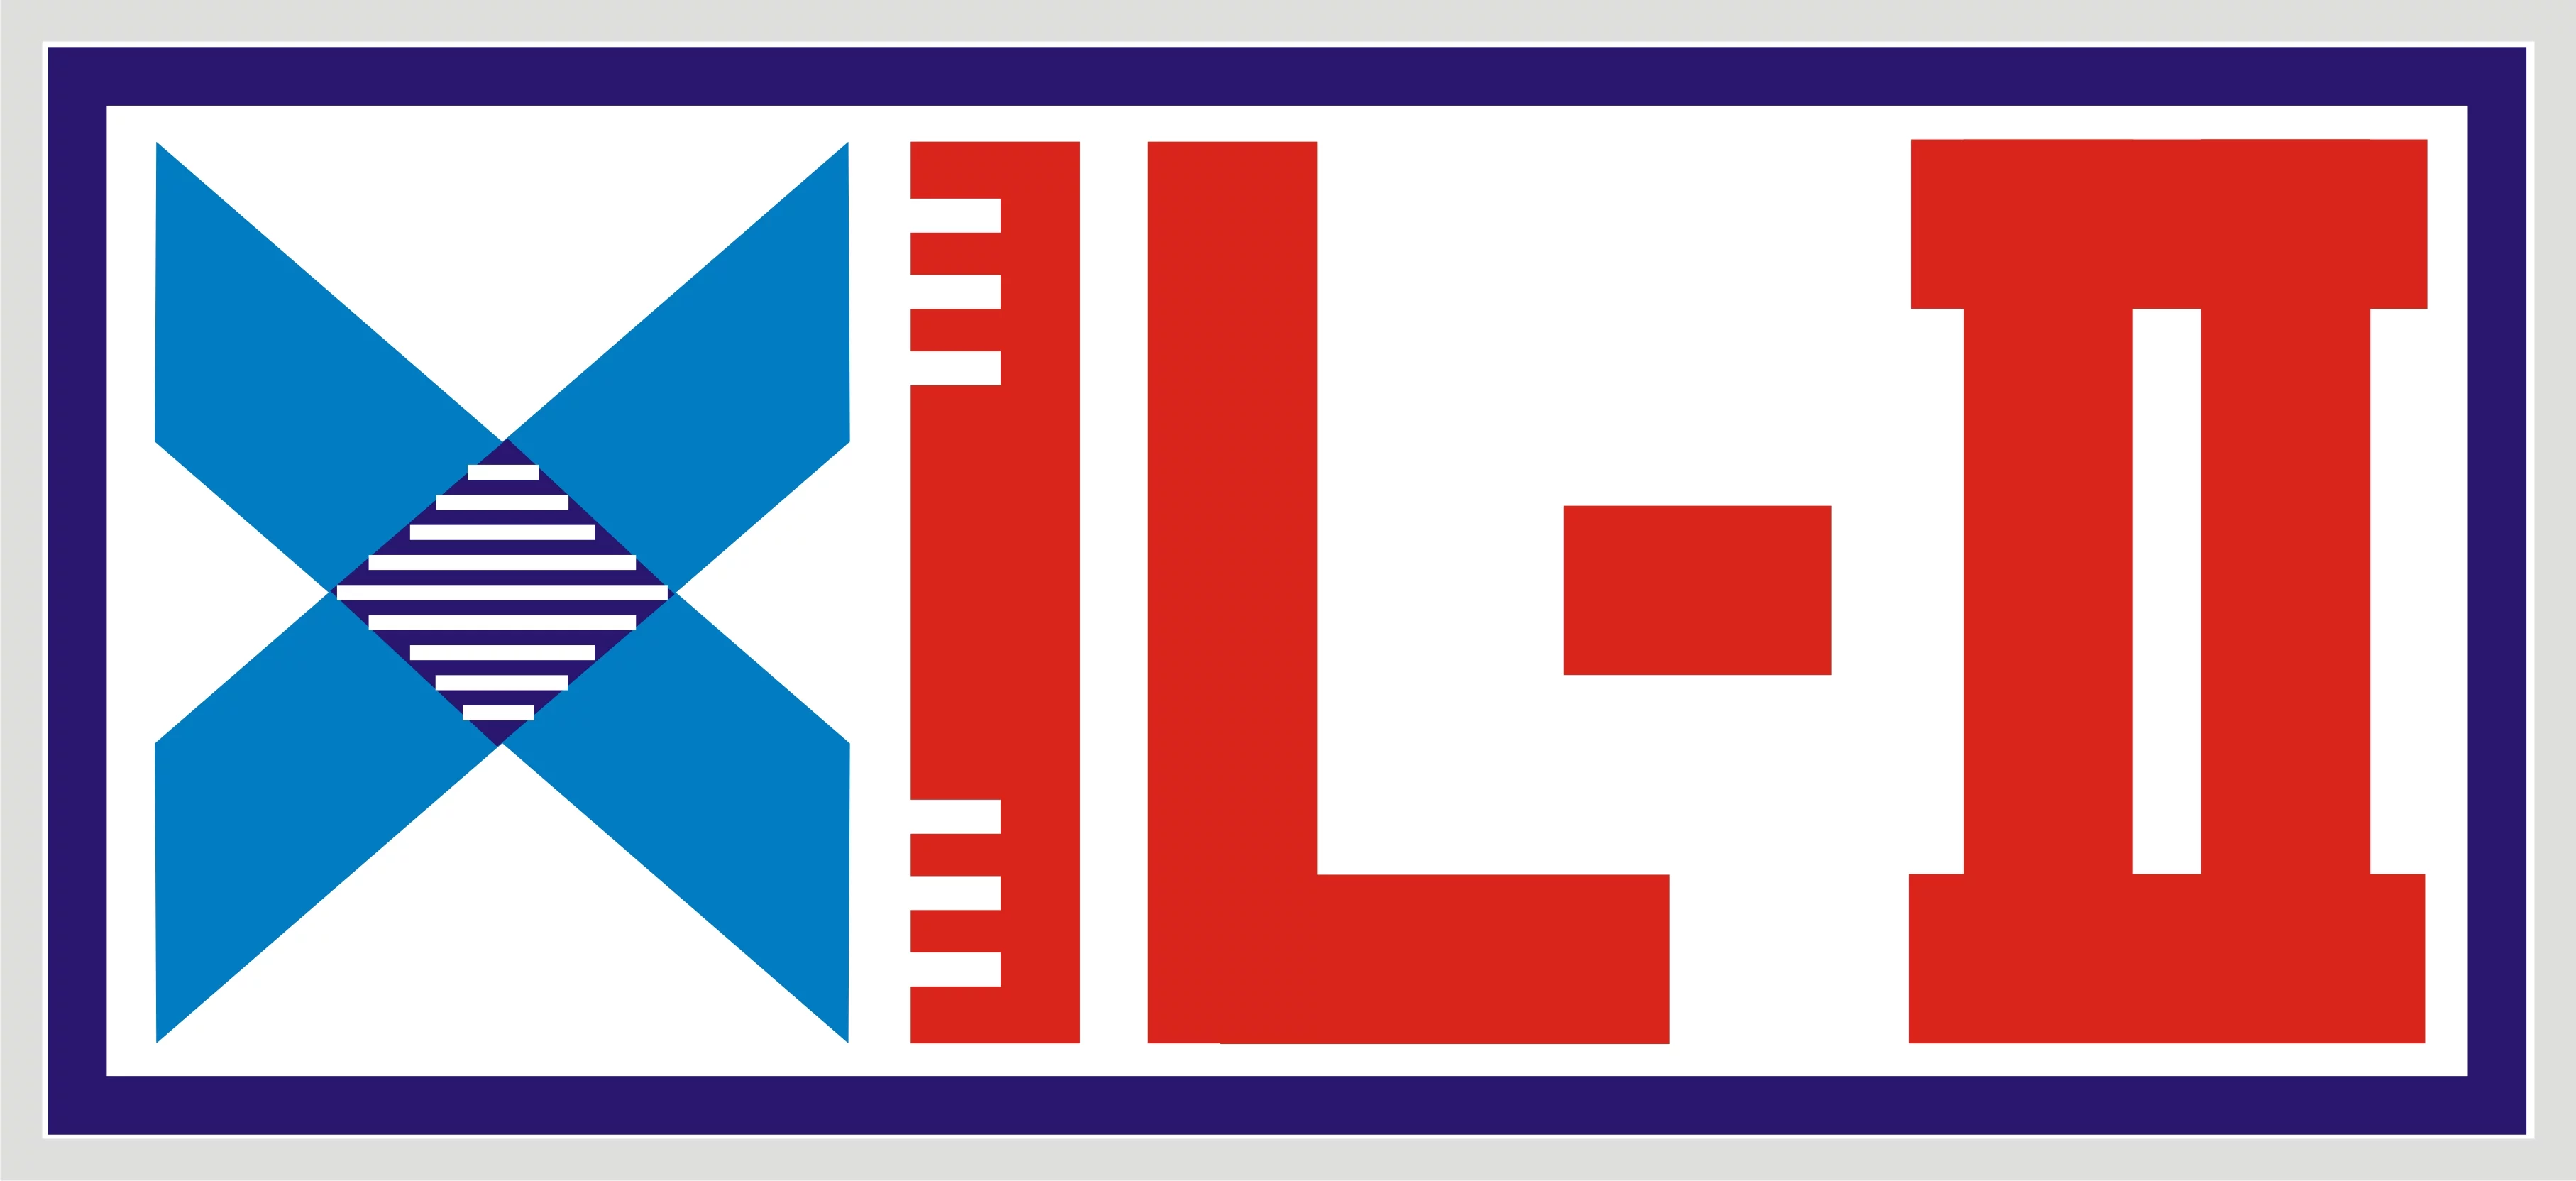 XIL logo.jpg